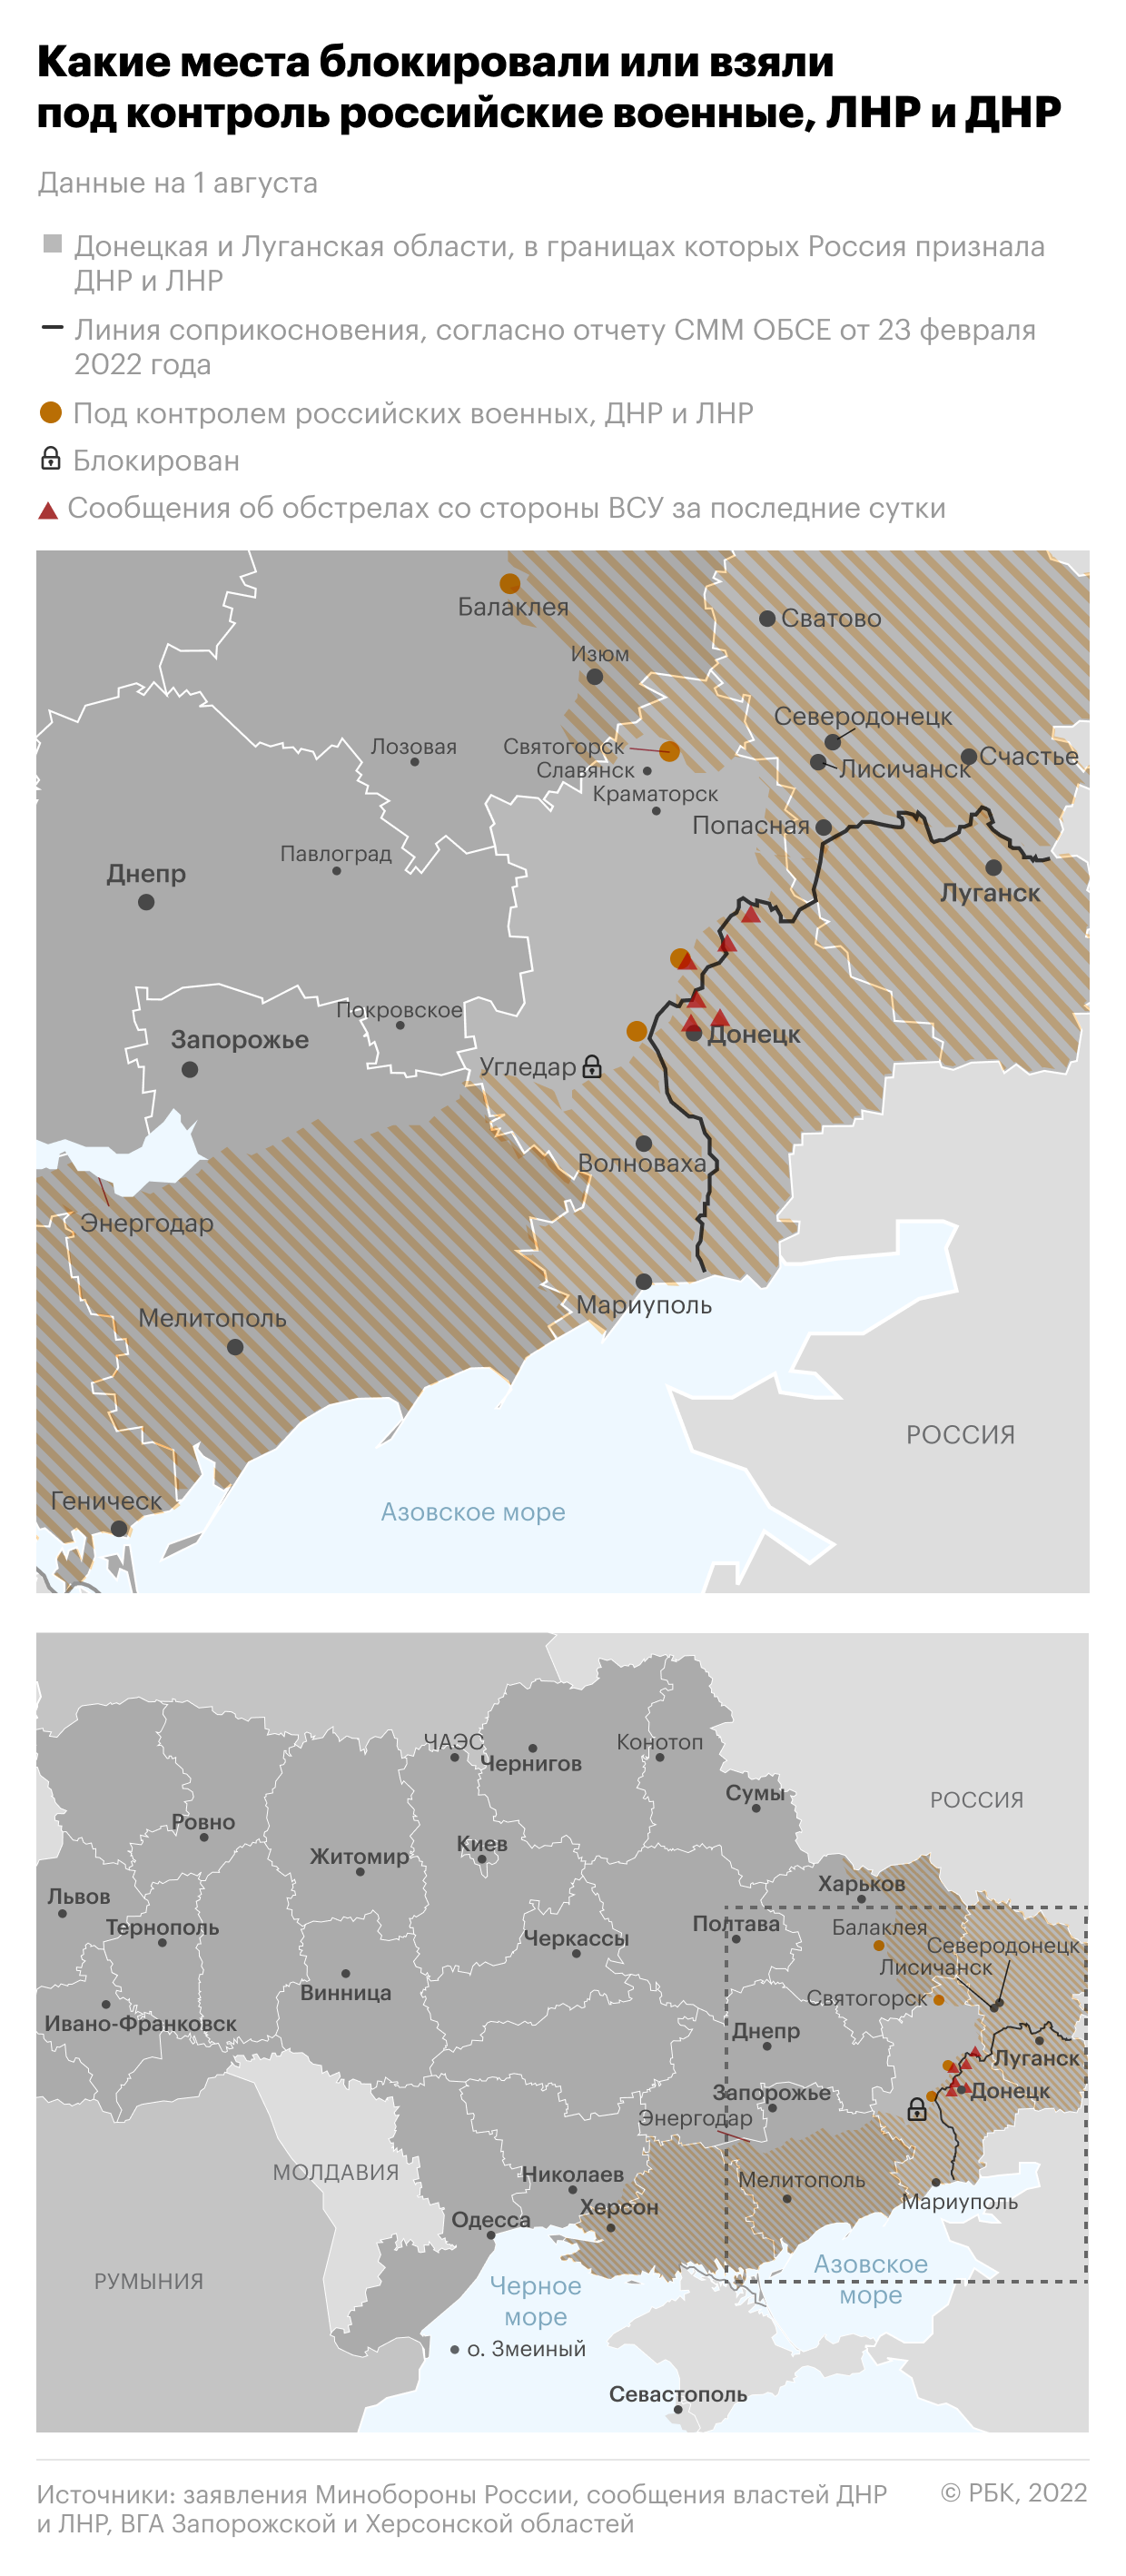 В разведке Украины допустили консультации с США перед ударами HIMARS"/>













